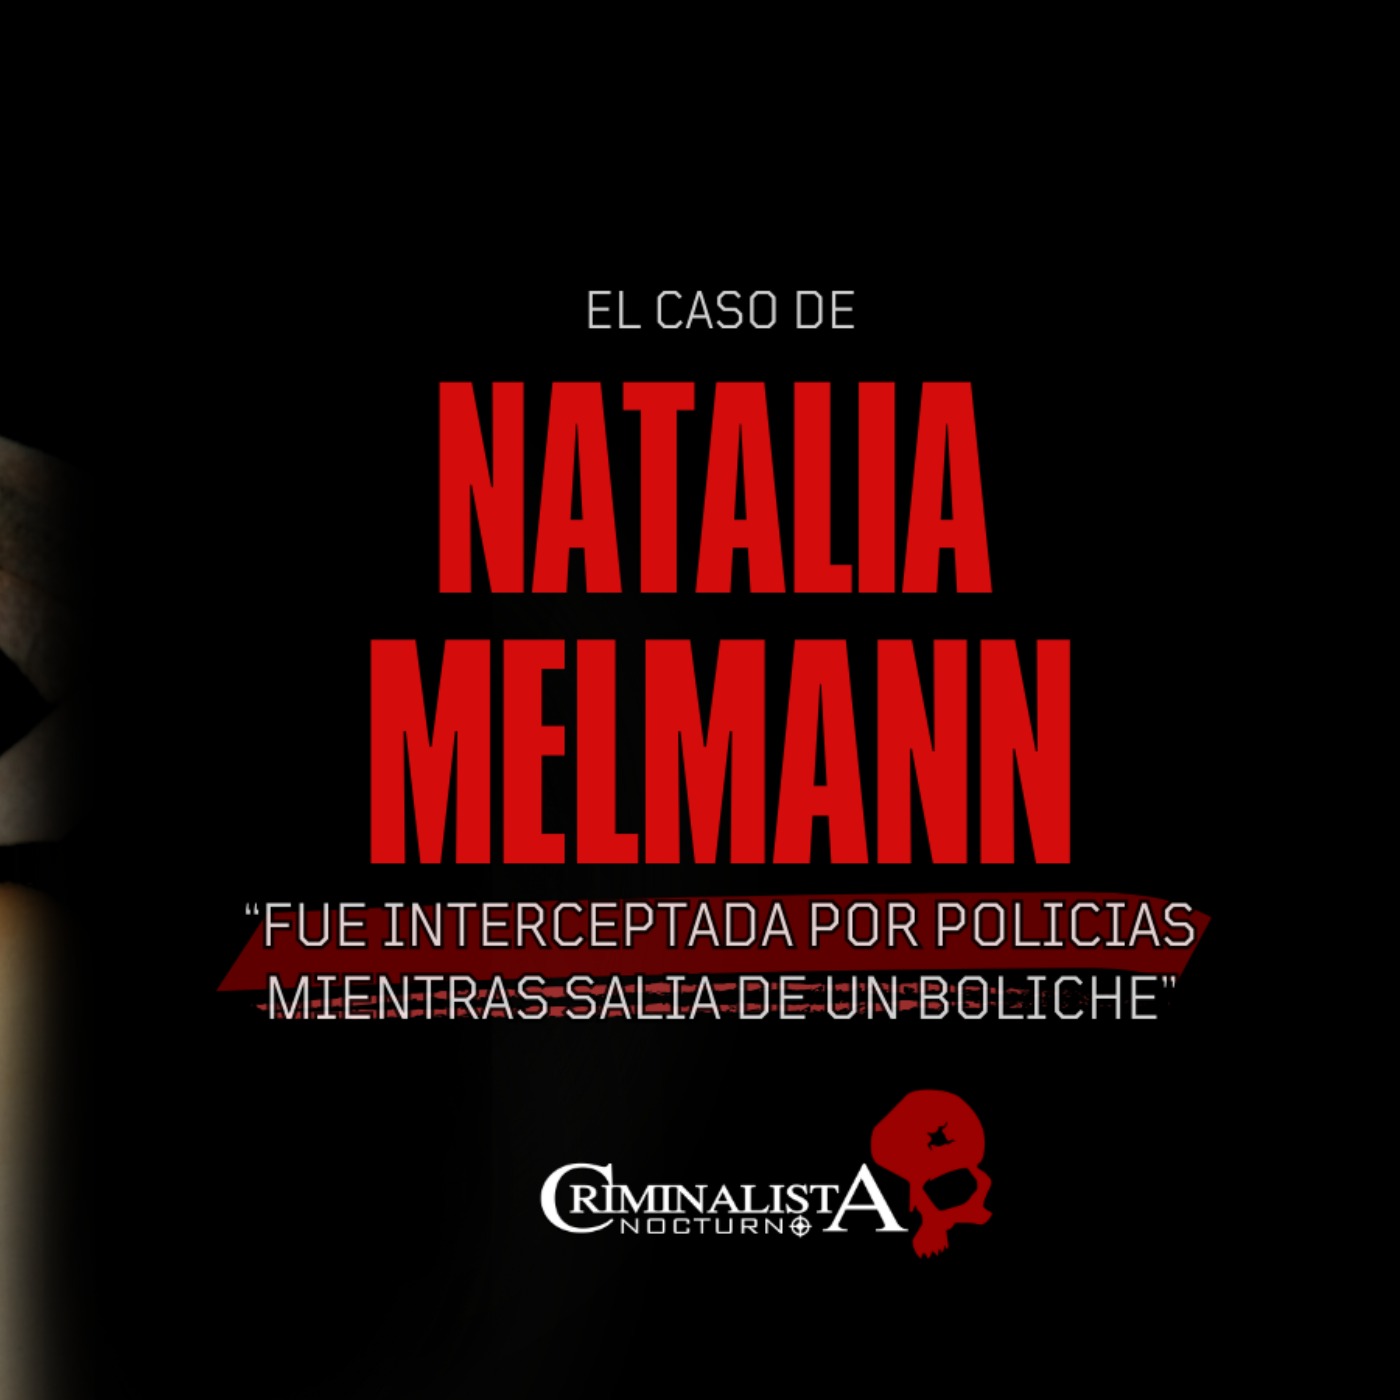 El caso de Natalia Melmann | Criminalista Nocturno